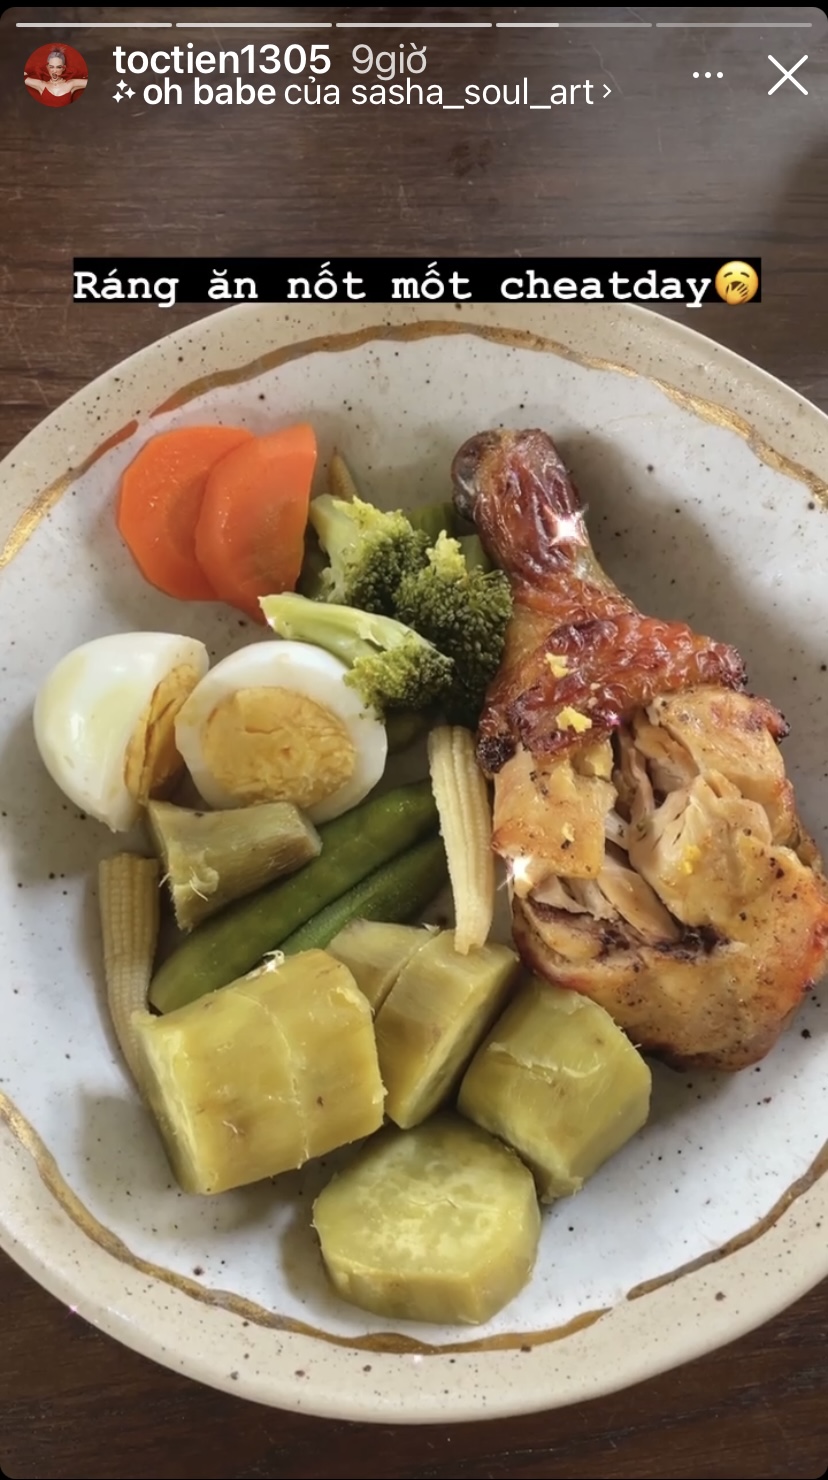 Khoai luộc, trứng luộc, bông cải, đậu que, đùi gà nướng... là những món ăn xuất hiện trên bàn ăn nhà Tóc Tiên hôm nay.